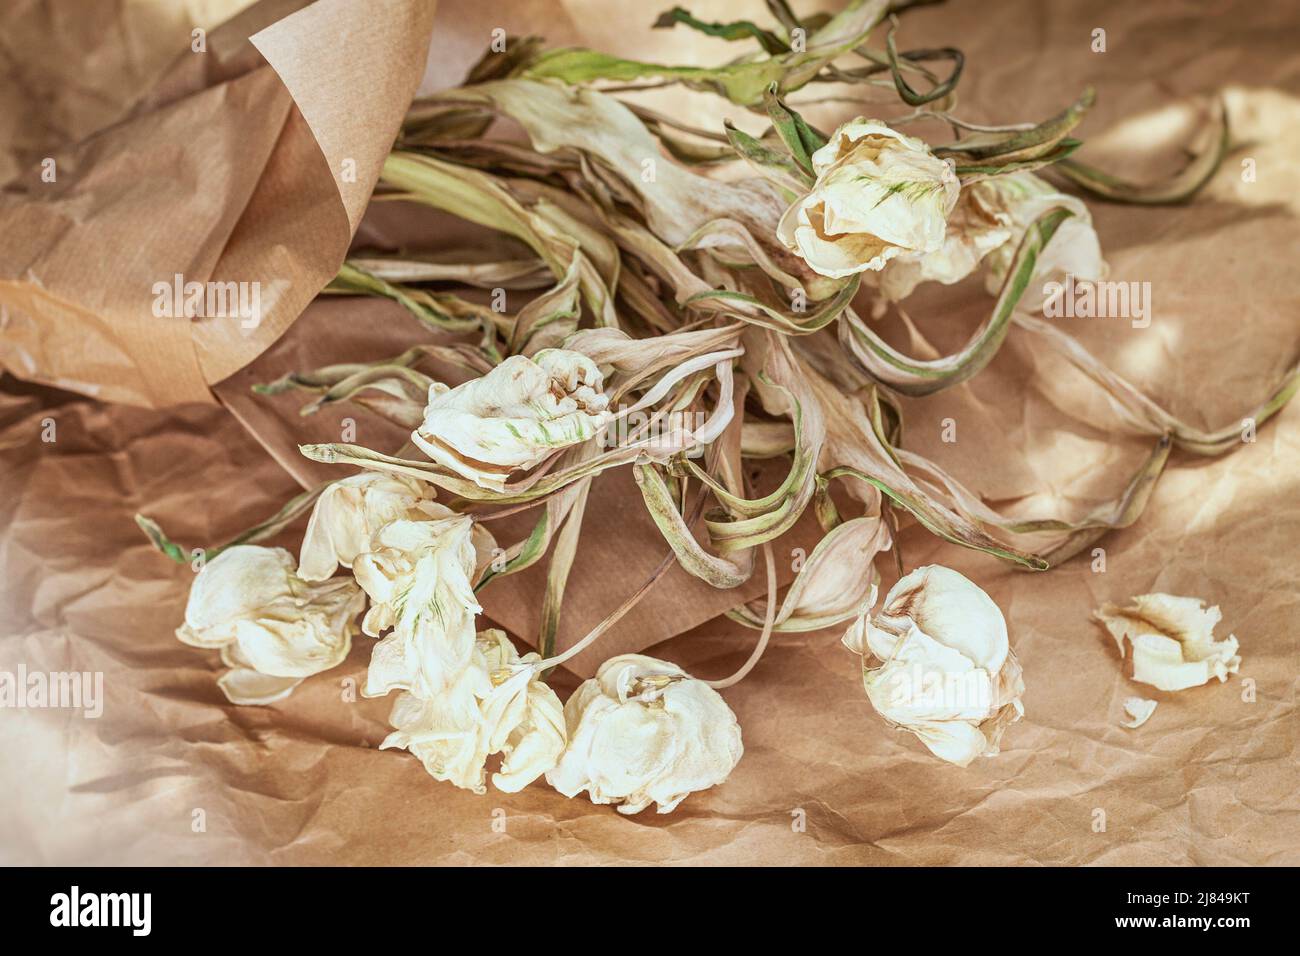 Verwelkter Strauß weißer Tulpen auf dem Hintergrund von Bastelpapier. Vintage-Stil, Nostalgie-Konzept Stockfoto